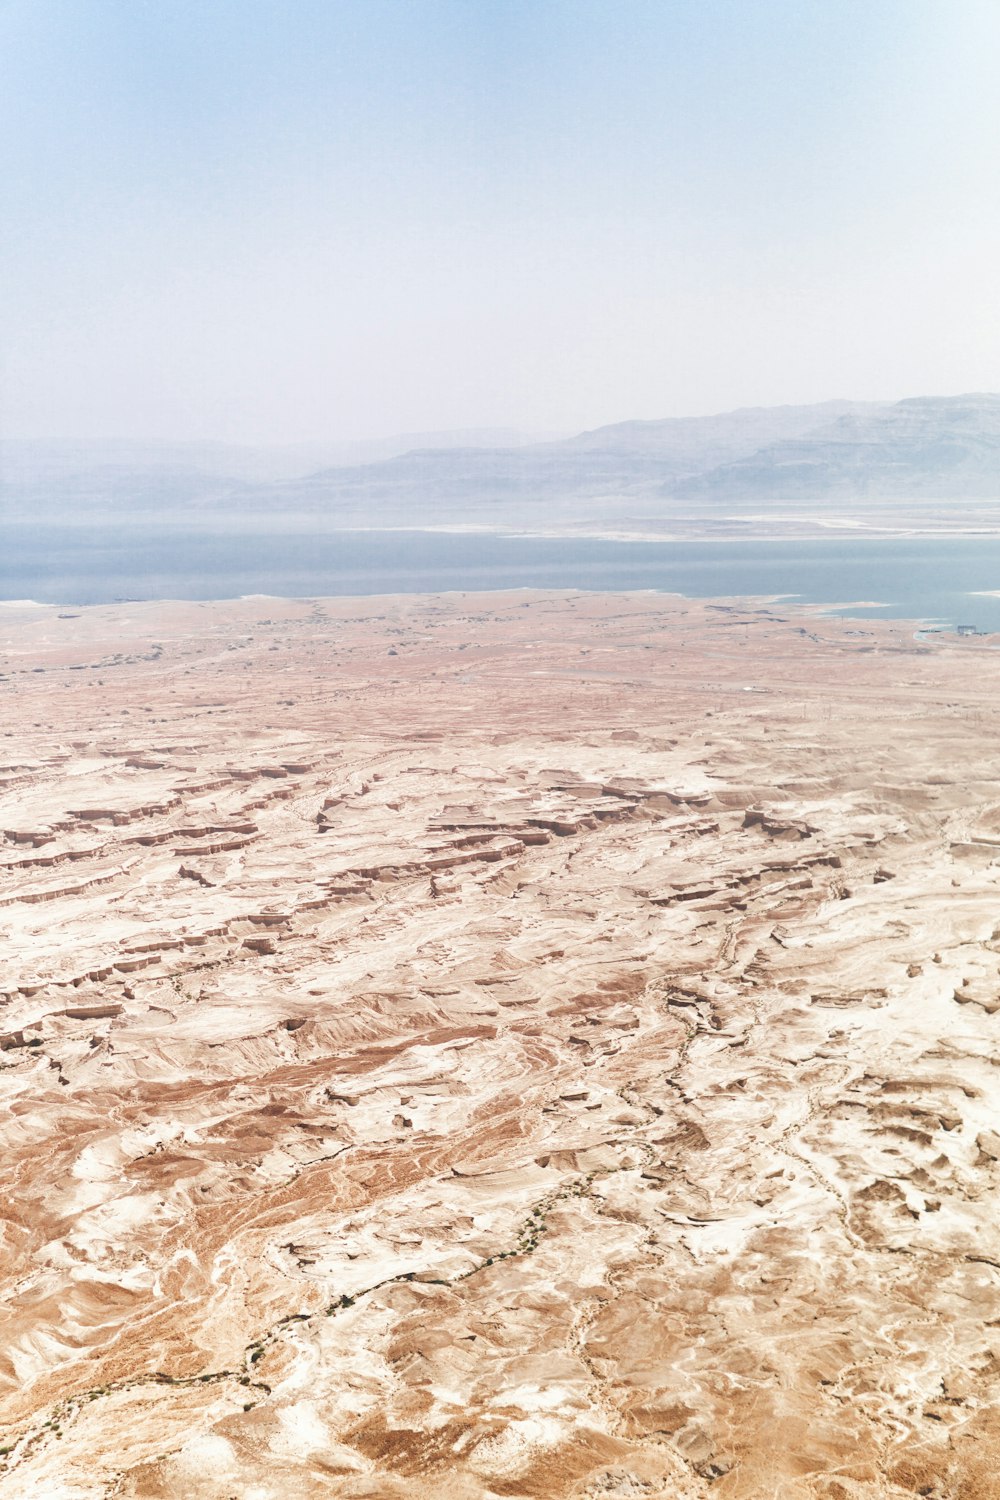 Una vista aérea de un desierto con un cuerpo de agua en la distancia